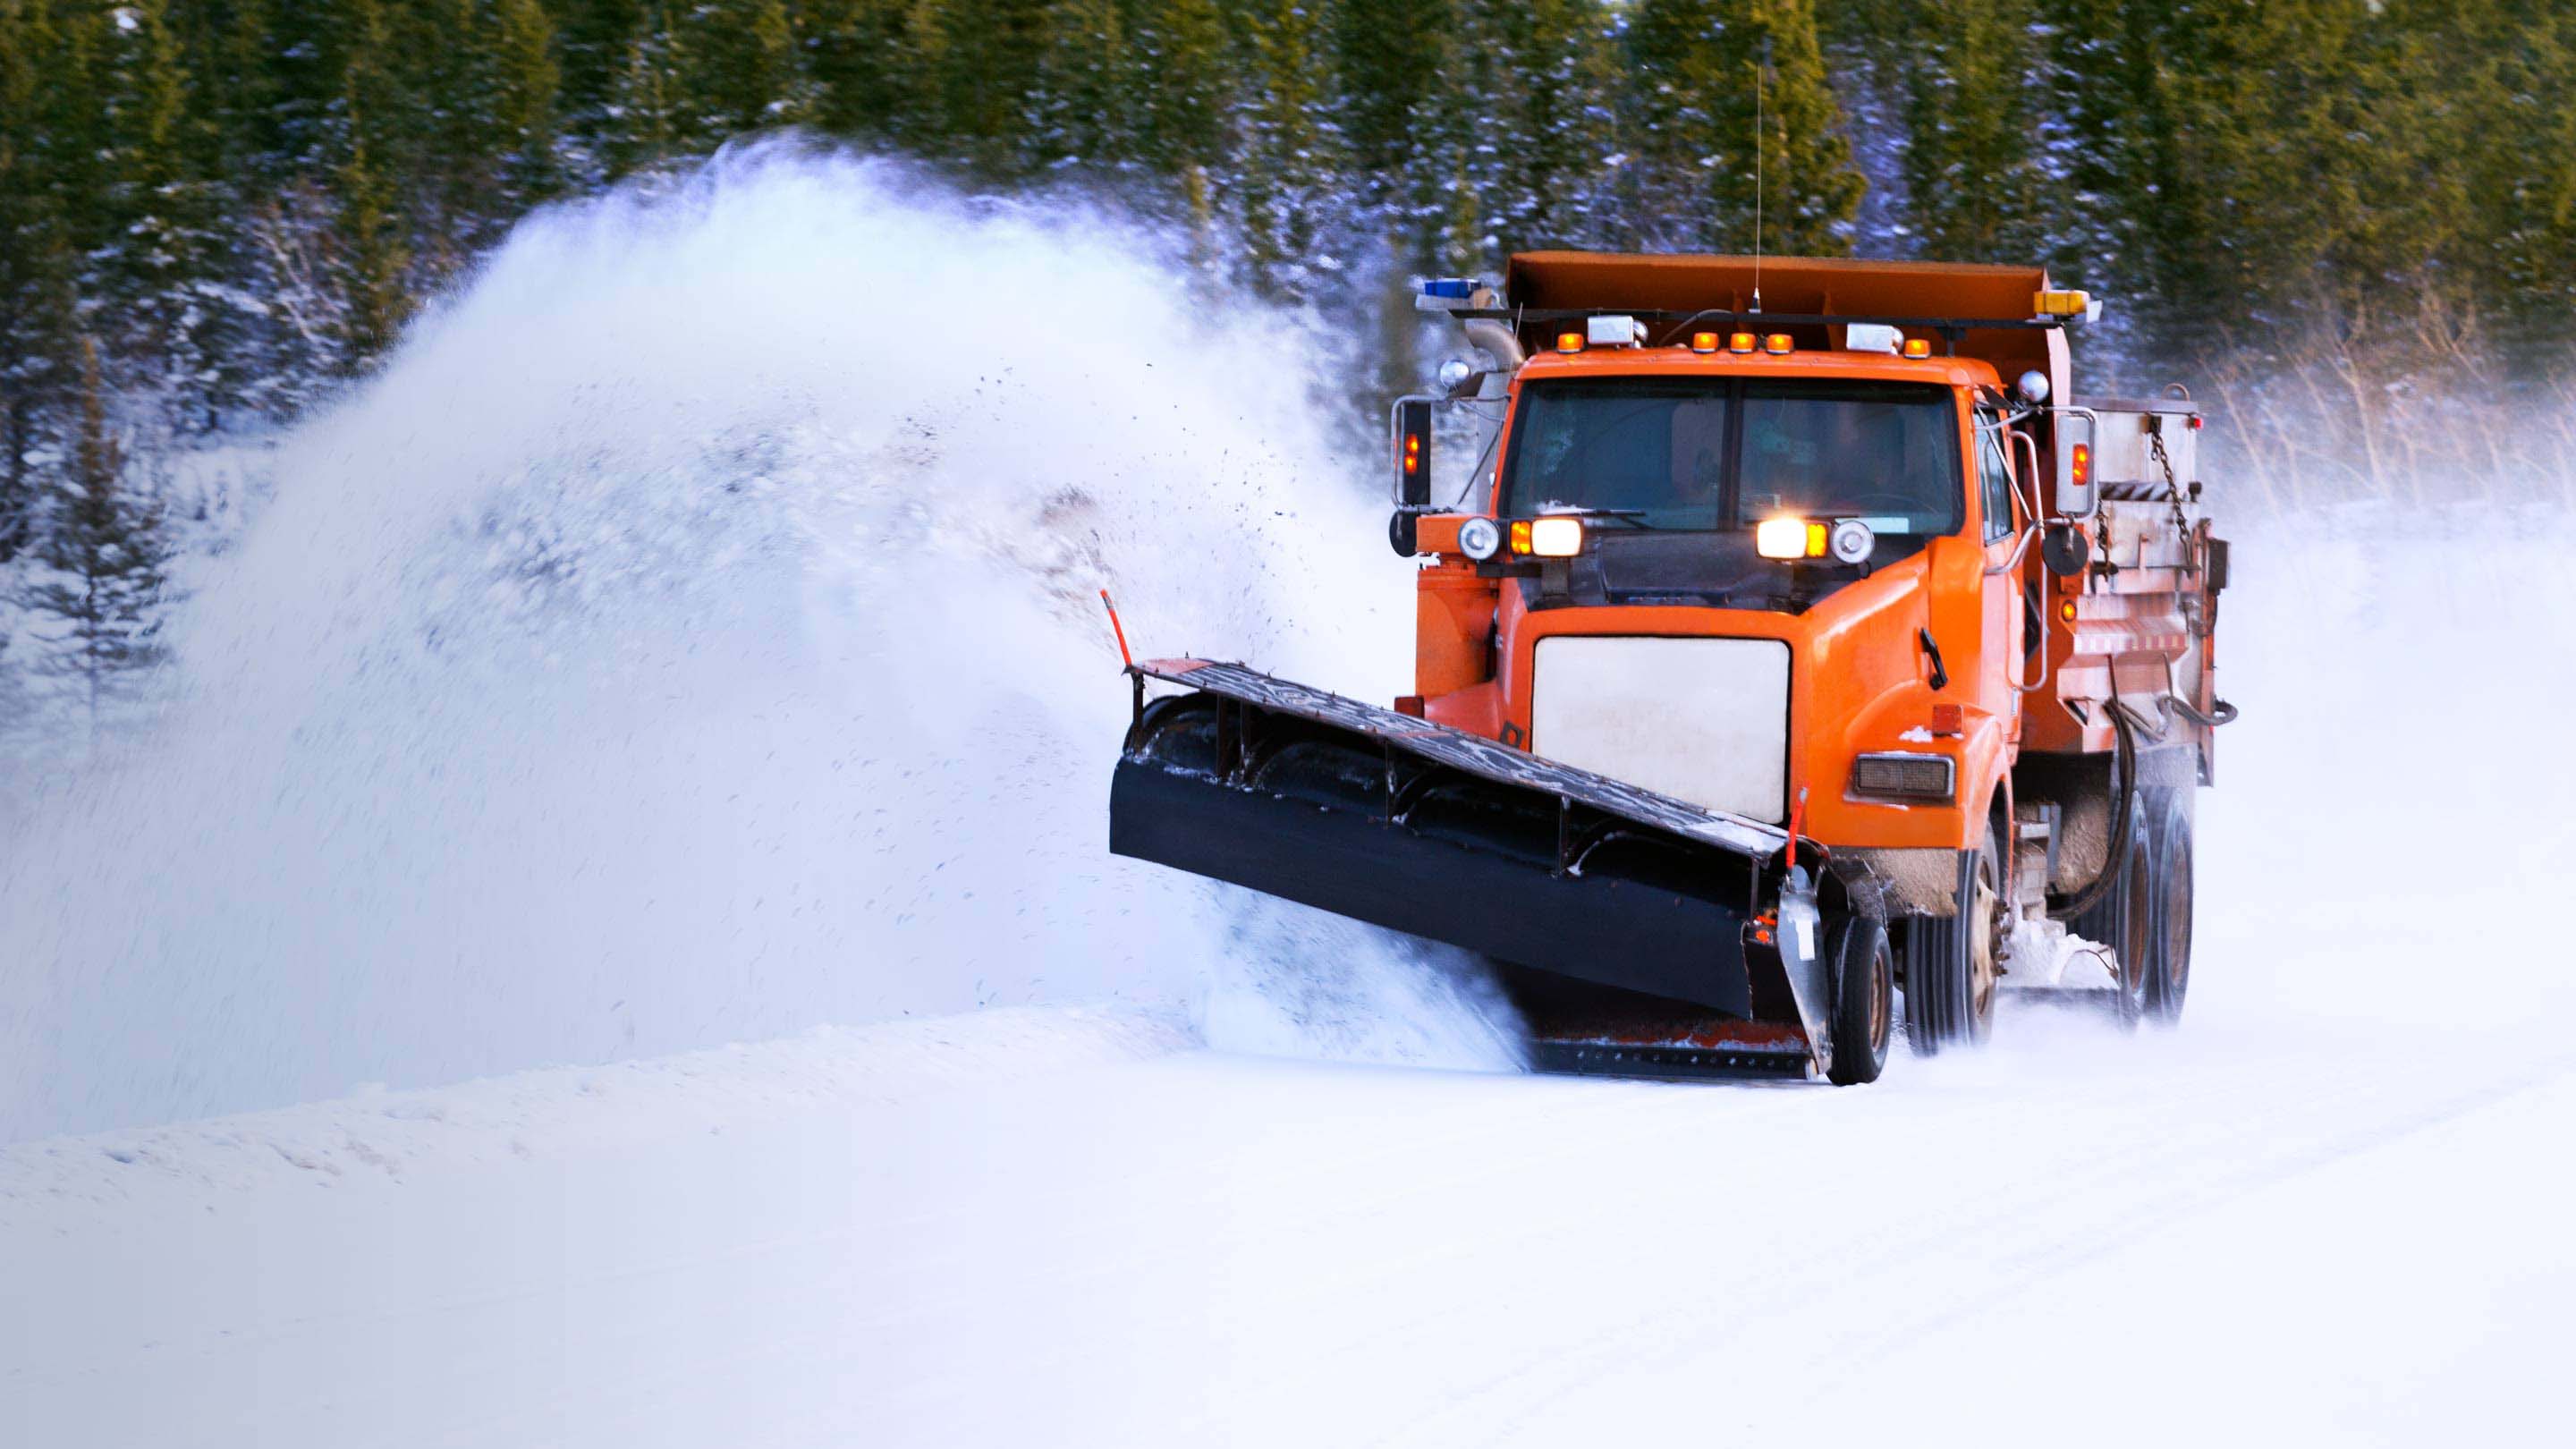 Orange snow plow truck collecting snow